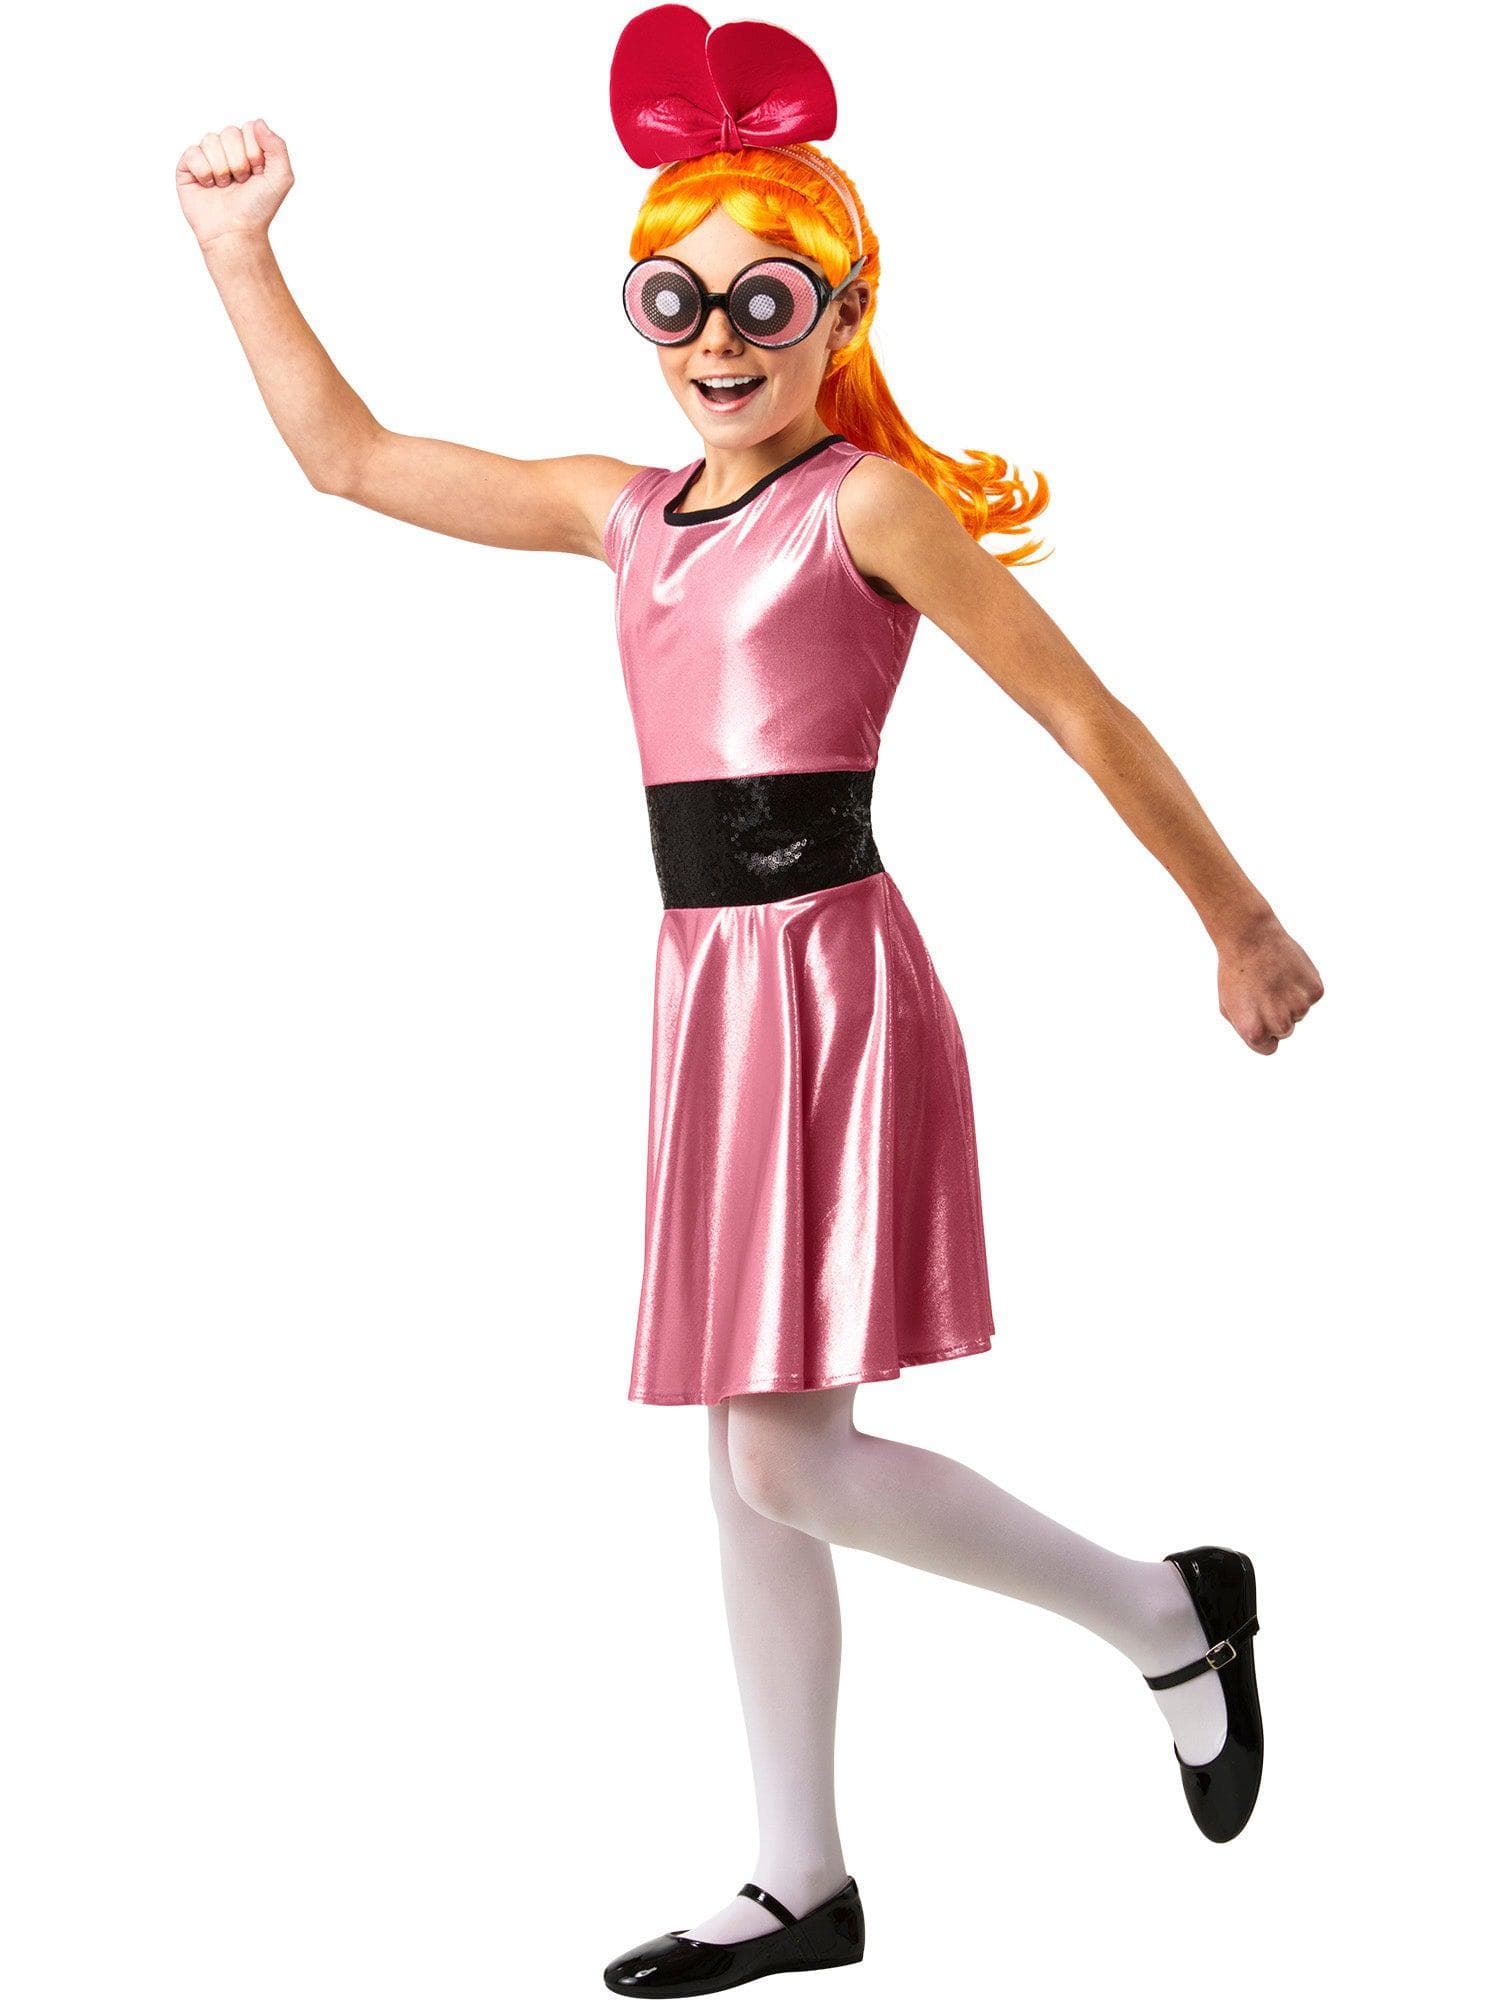 Powerpuff Girls Blossom Kids Costume - costumes.com